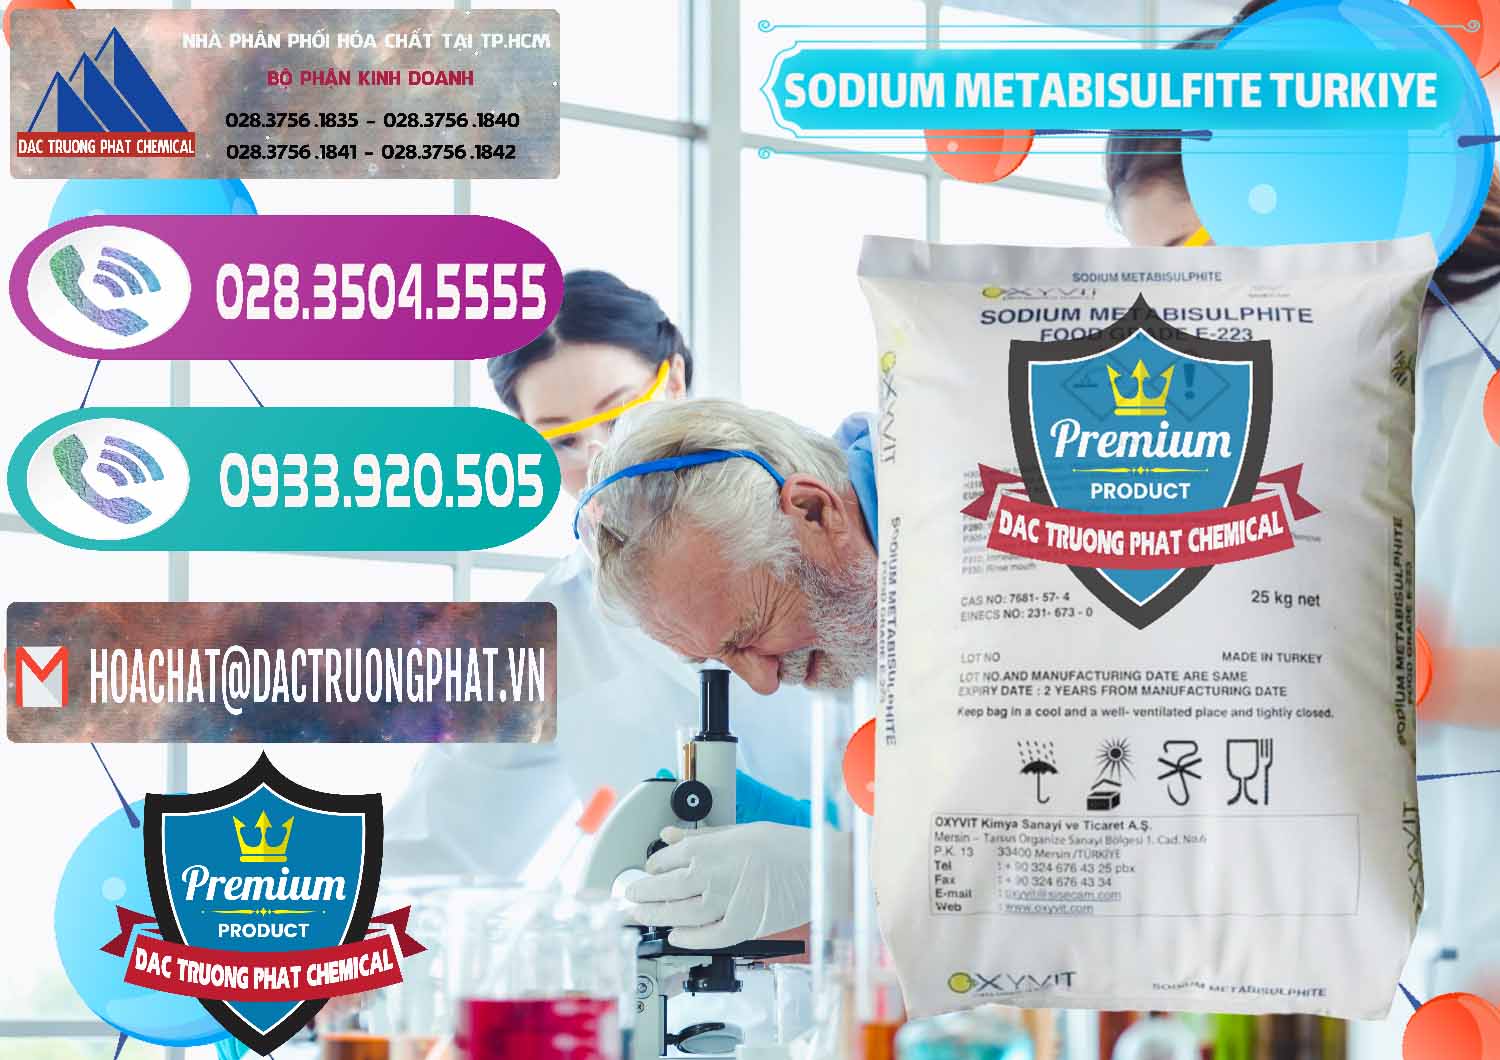 Cty bán - phân phối Sodium Metabisulfite - NA2S2O5 Food Grade E-223 Thổ Nhĩ Kỳ Turkey - 0413 - Công ty chuyên kinh doanh & phân phối hóa chất tại TP.HCM - hoachatxulynuoc.com